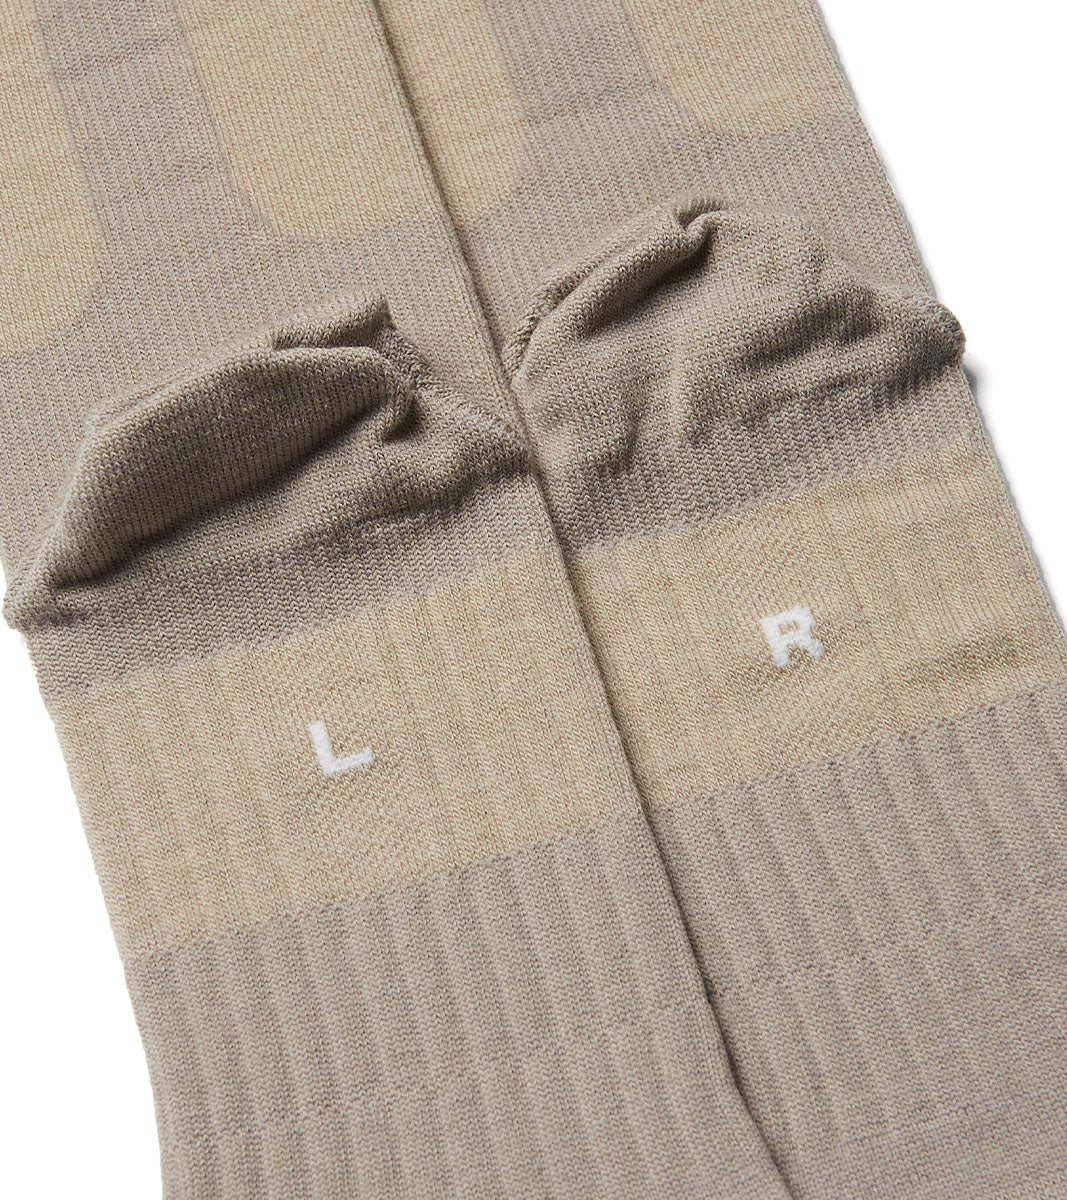 Merino Wool Socks Lite -Feather Beige